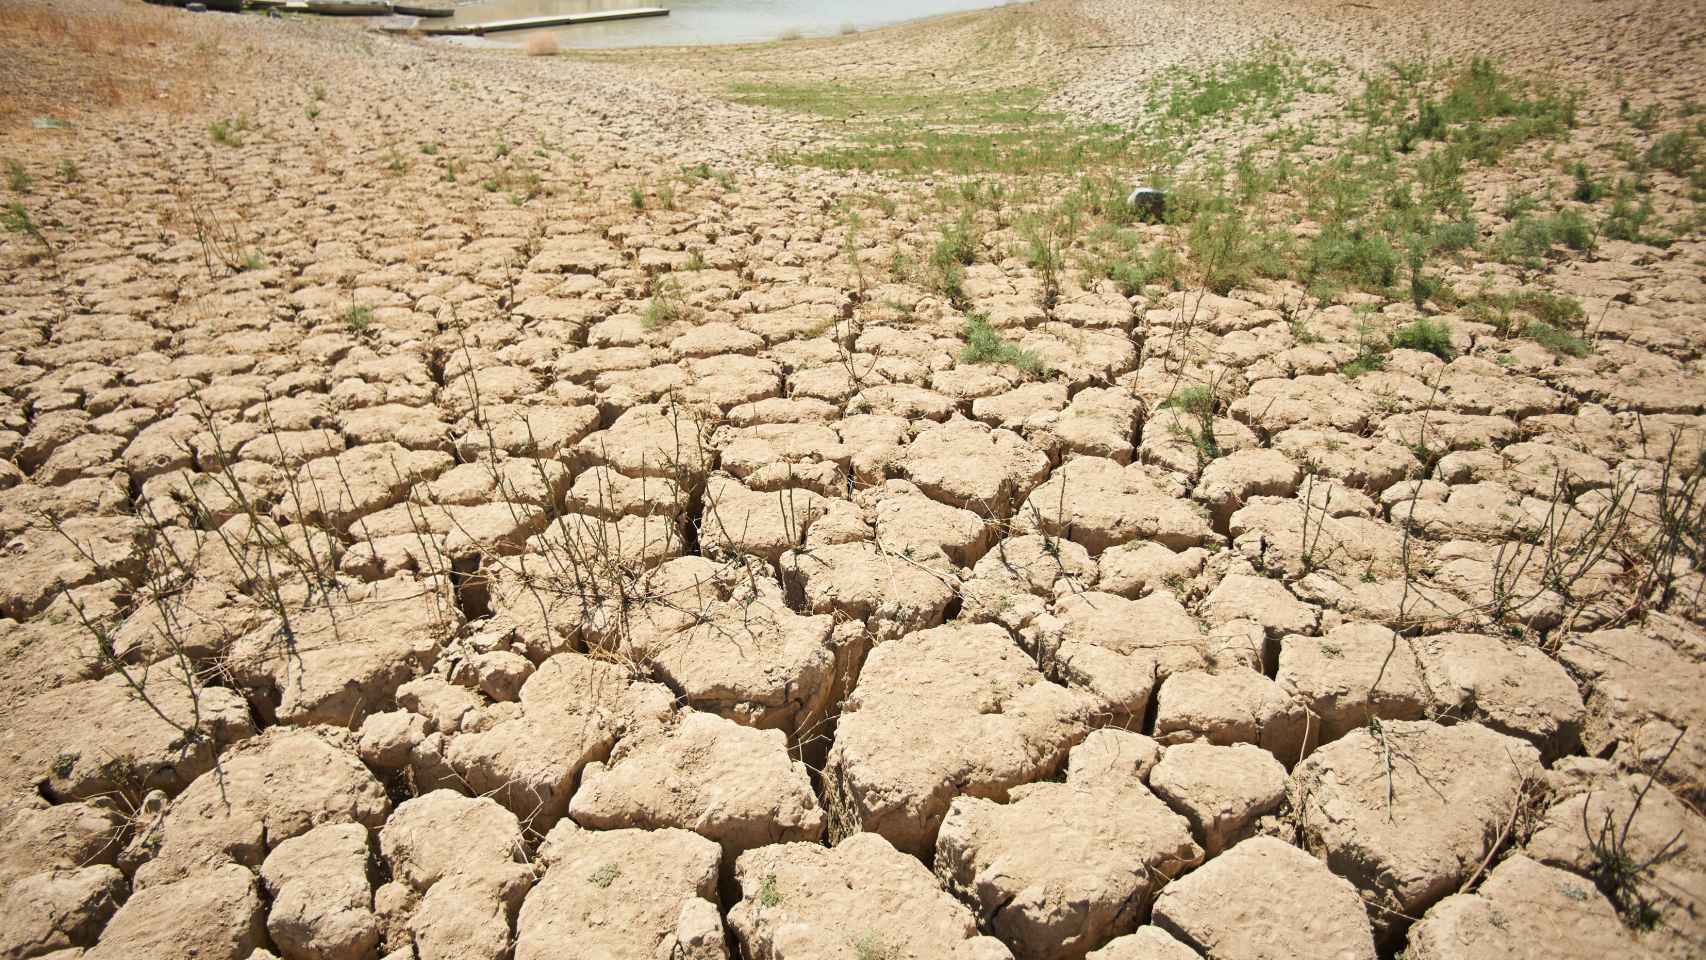 Un campo afectado por la sequía extrema.